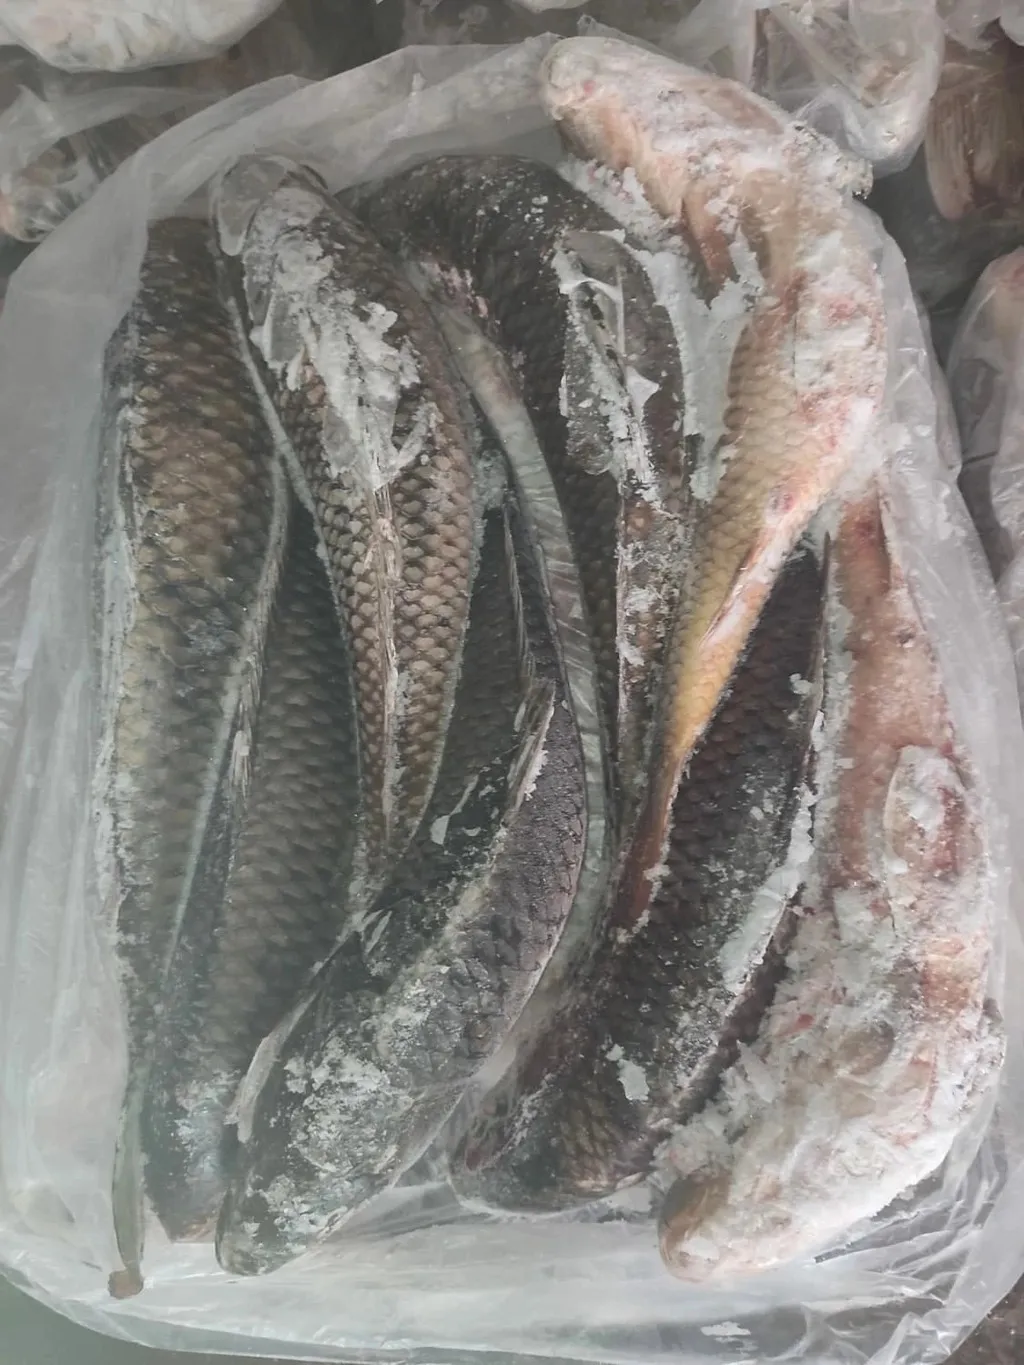 везу вяленую рыбу в Крым в Севастополе 4